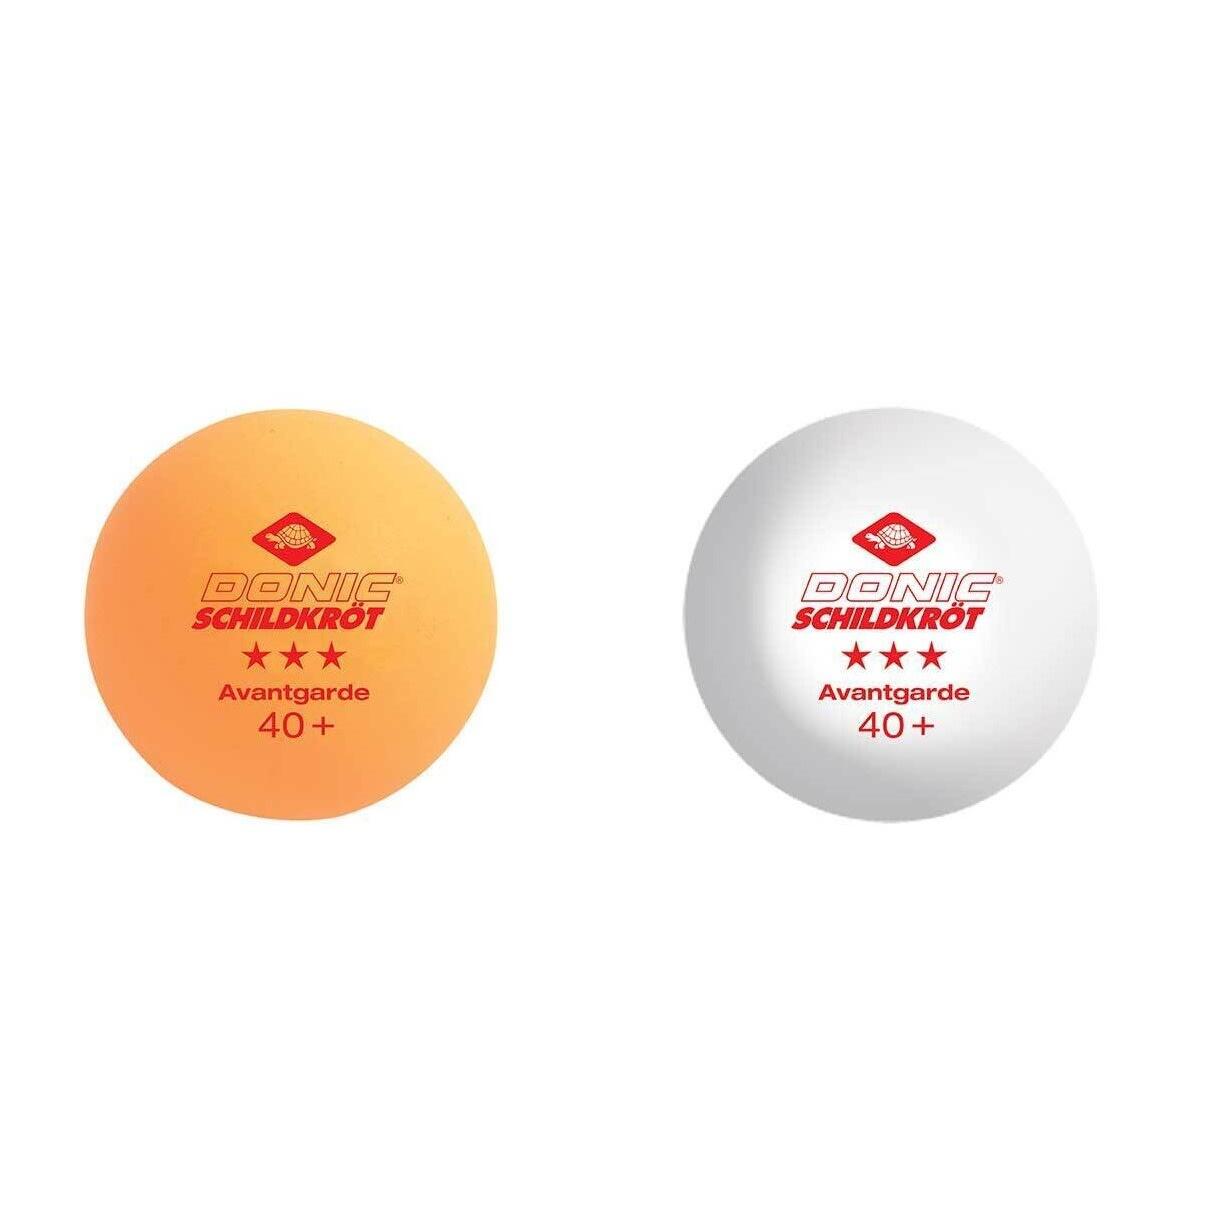 DONIC SCHILDKRÖT 3Star Avantgarde Table Tennis Balls (Pack of 6) (White/Red/Yellow)